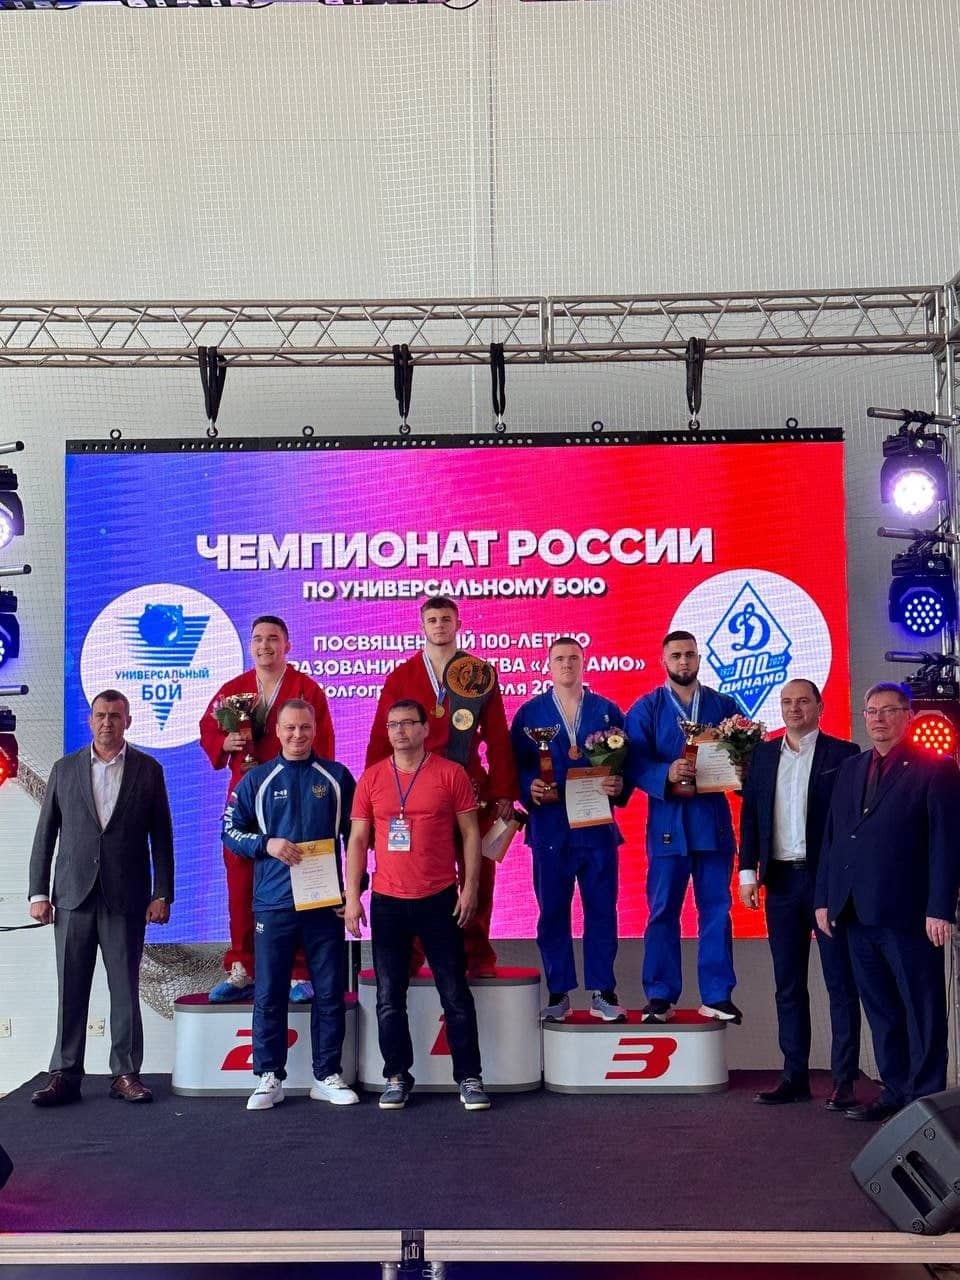 Омские спортсмены удостоились шести наград чемпионата России по универсальному бою